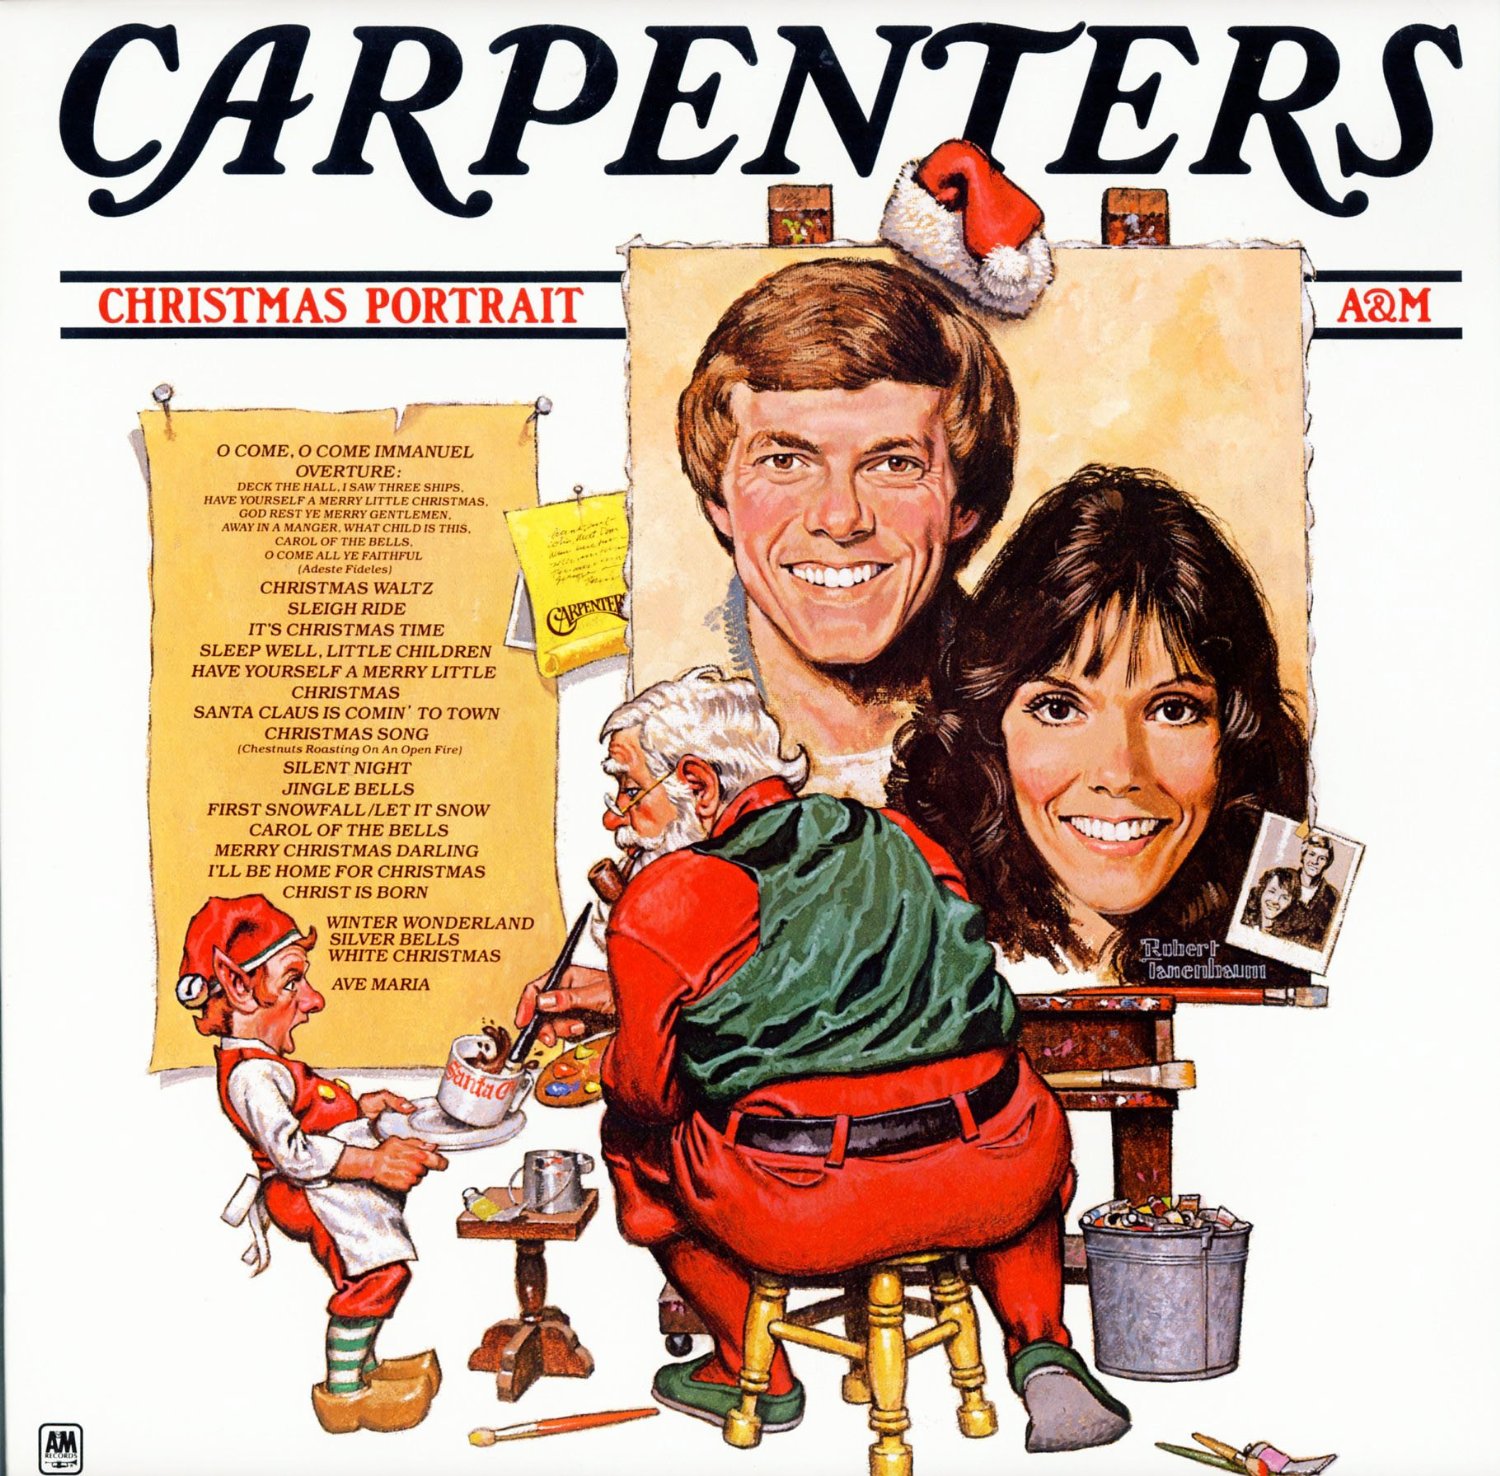 The Carpenters – Christmas Portrait